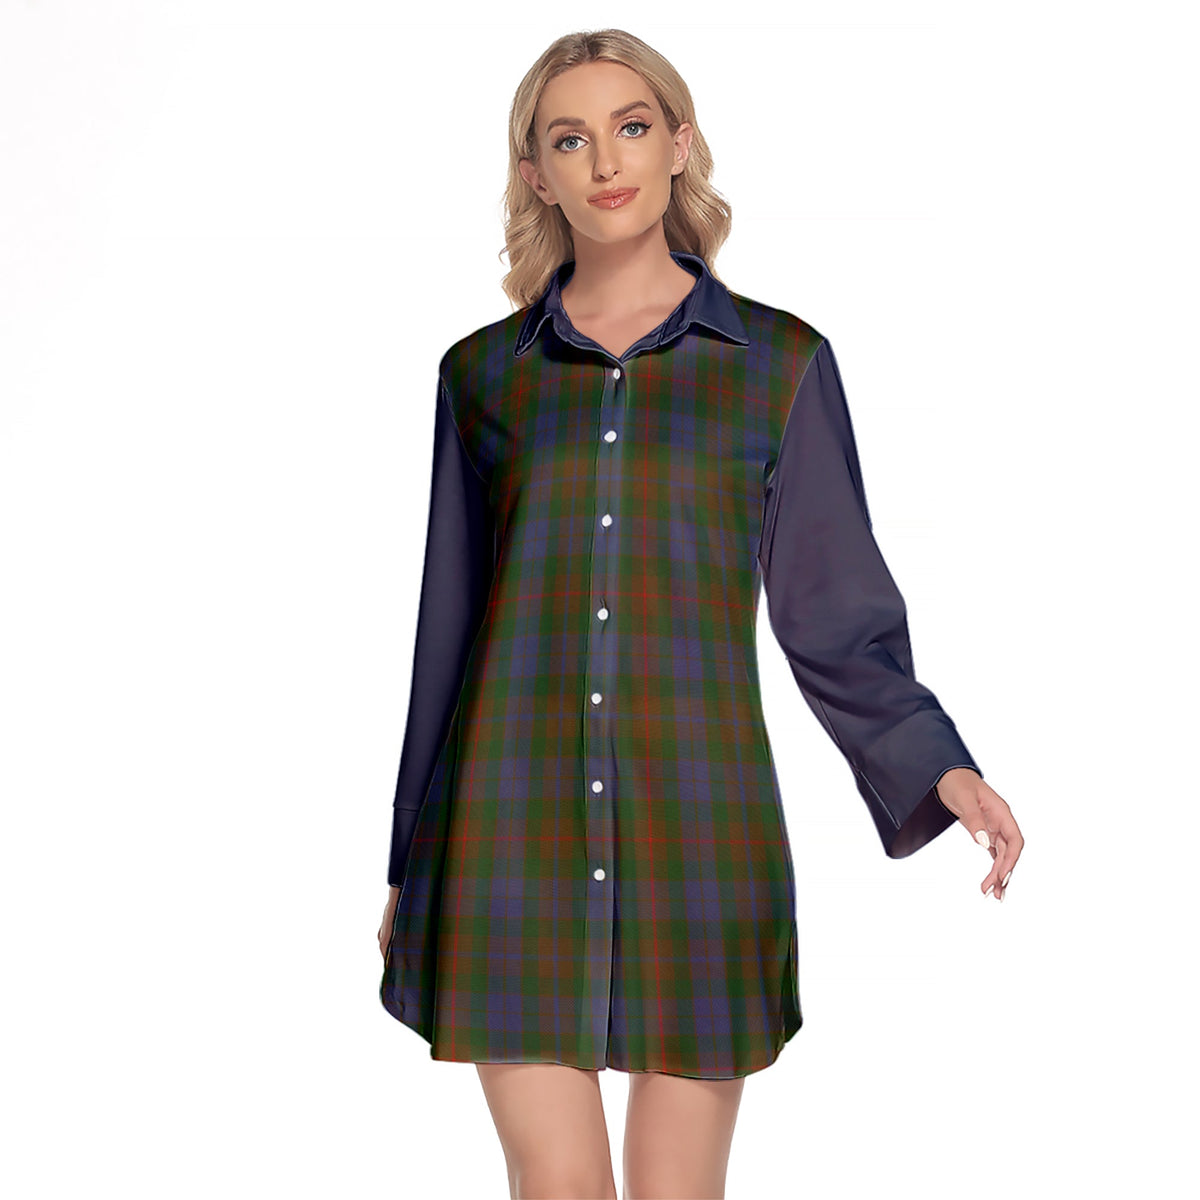 Buchanan Hunting Tartan Women's Lapel Shirt Dress With Long Sleeve